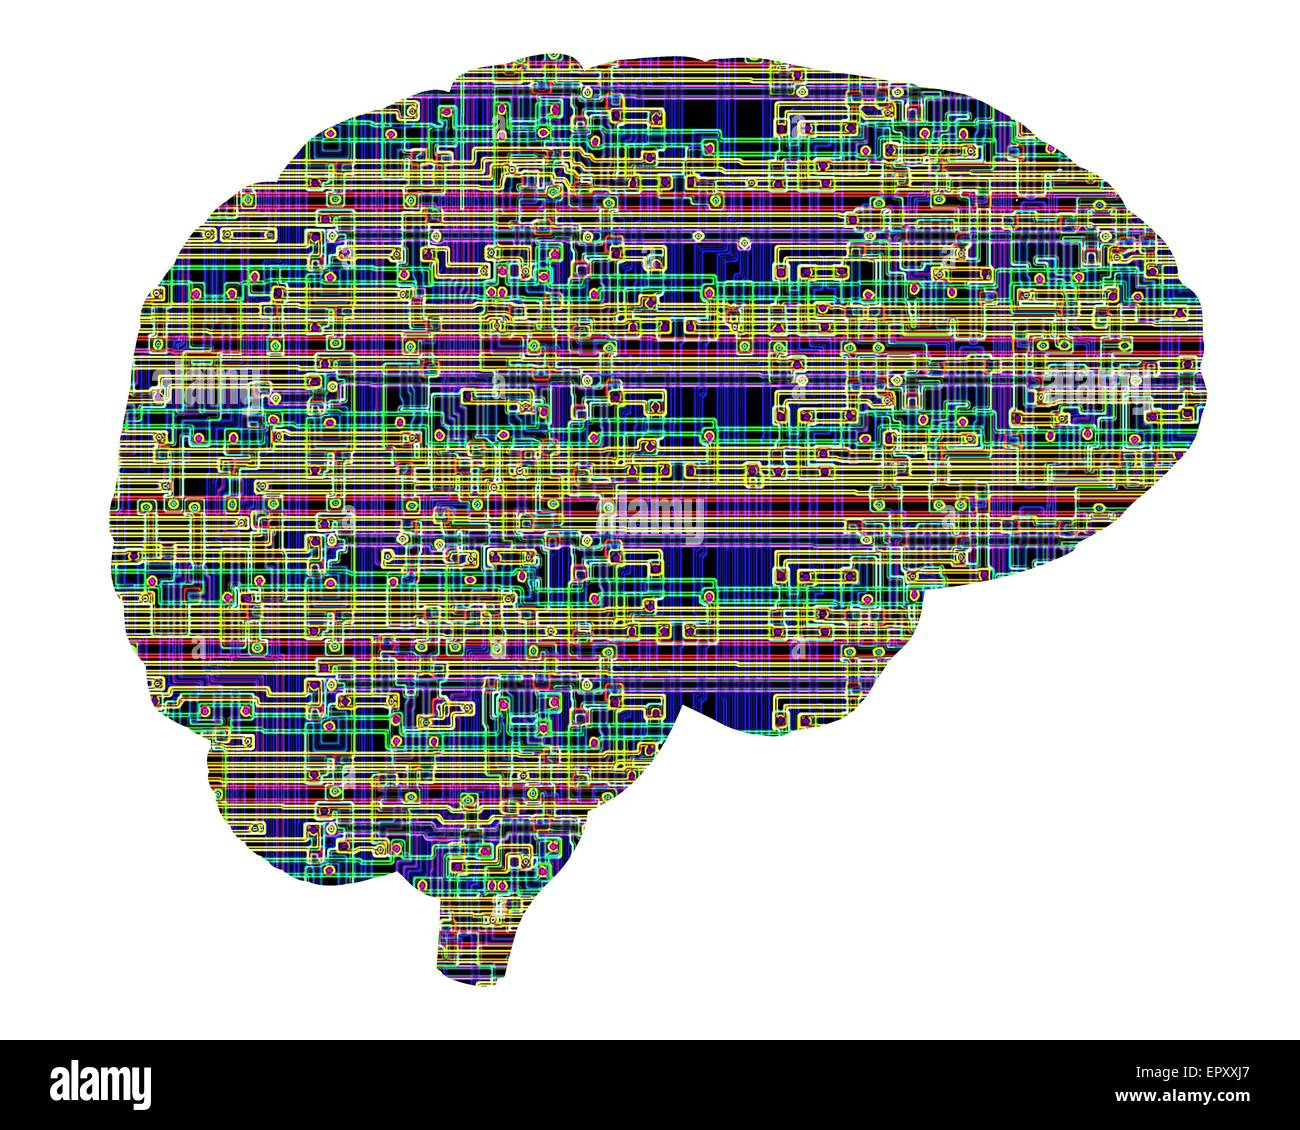 Intelligenza artificiale e cibernetica, immagine concettuale. Questa immagine di un chip per computer struttura, sovrapposti su un cervello umano, potrebbe rappresentare concetti come la cibernetica, robotica, impianti di cervello e intelligenza artificiale. Qui, la struttura di chip Foto Stock